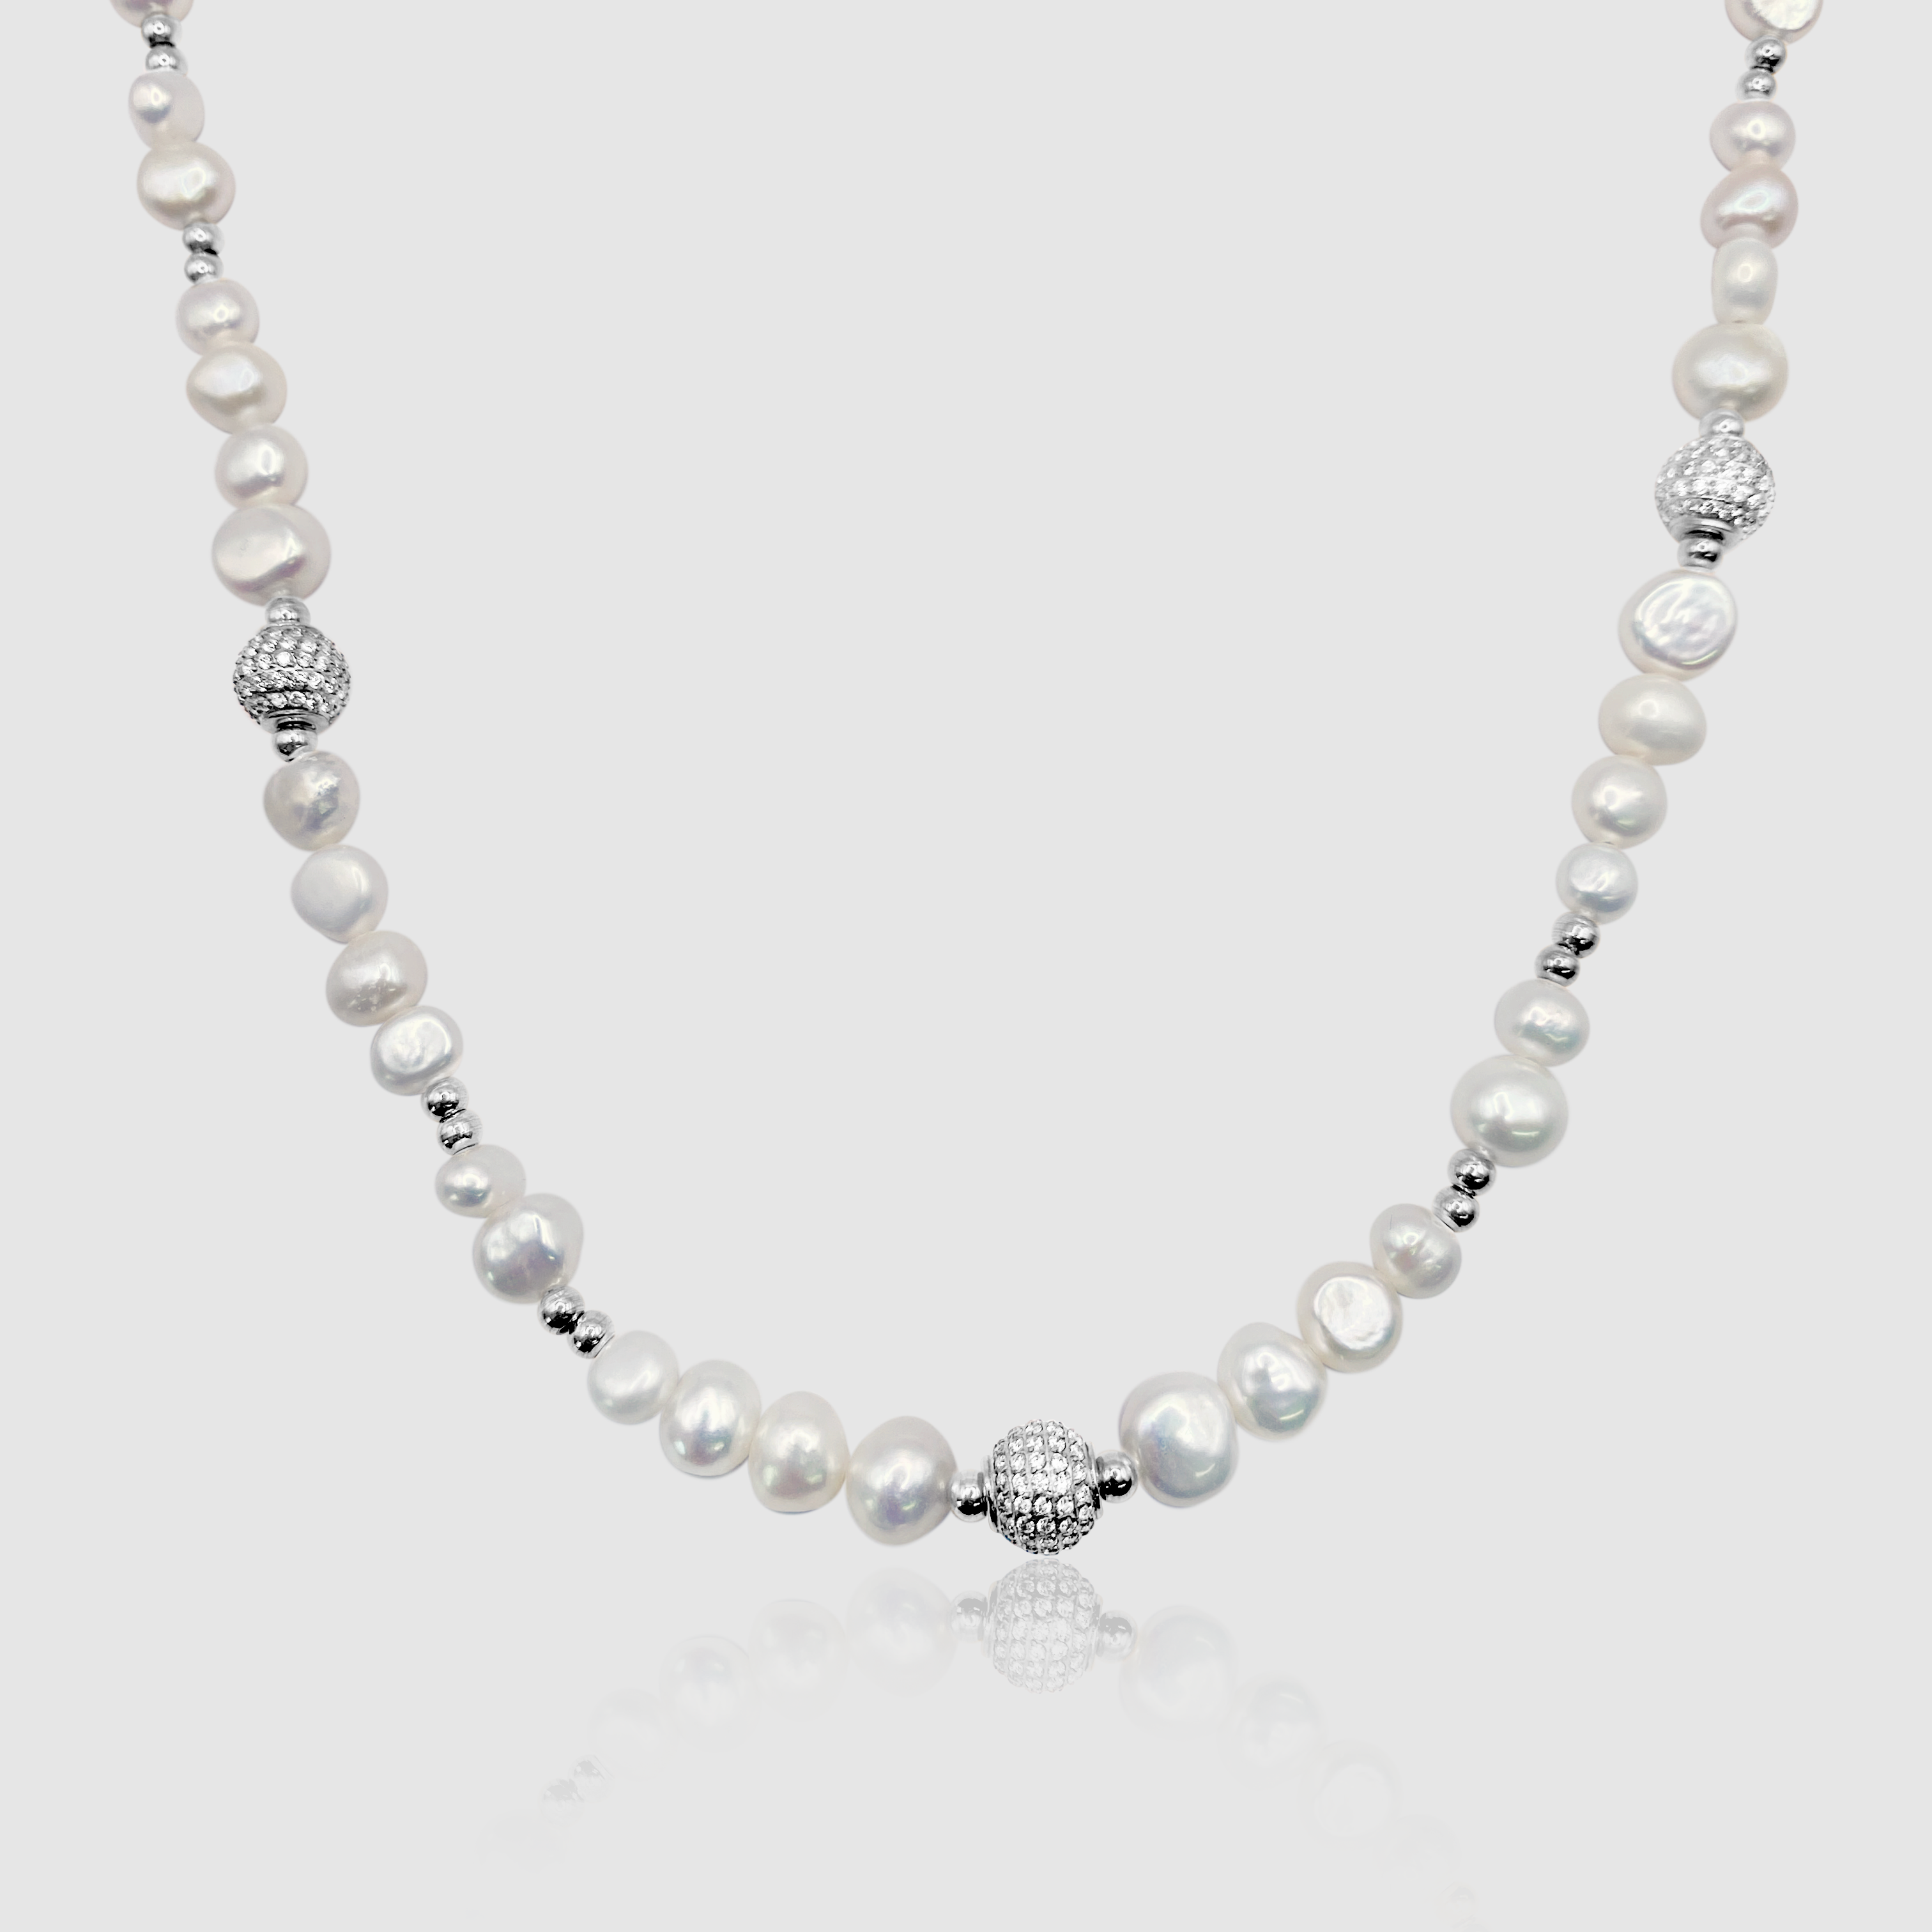 Echte Perlenkette Mit Eisperlen (Silber)